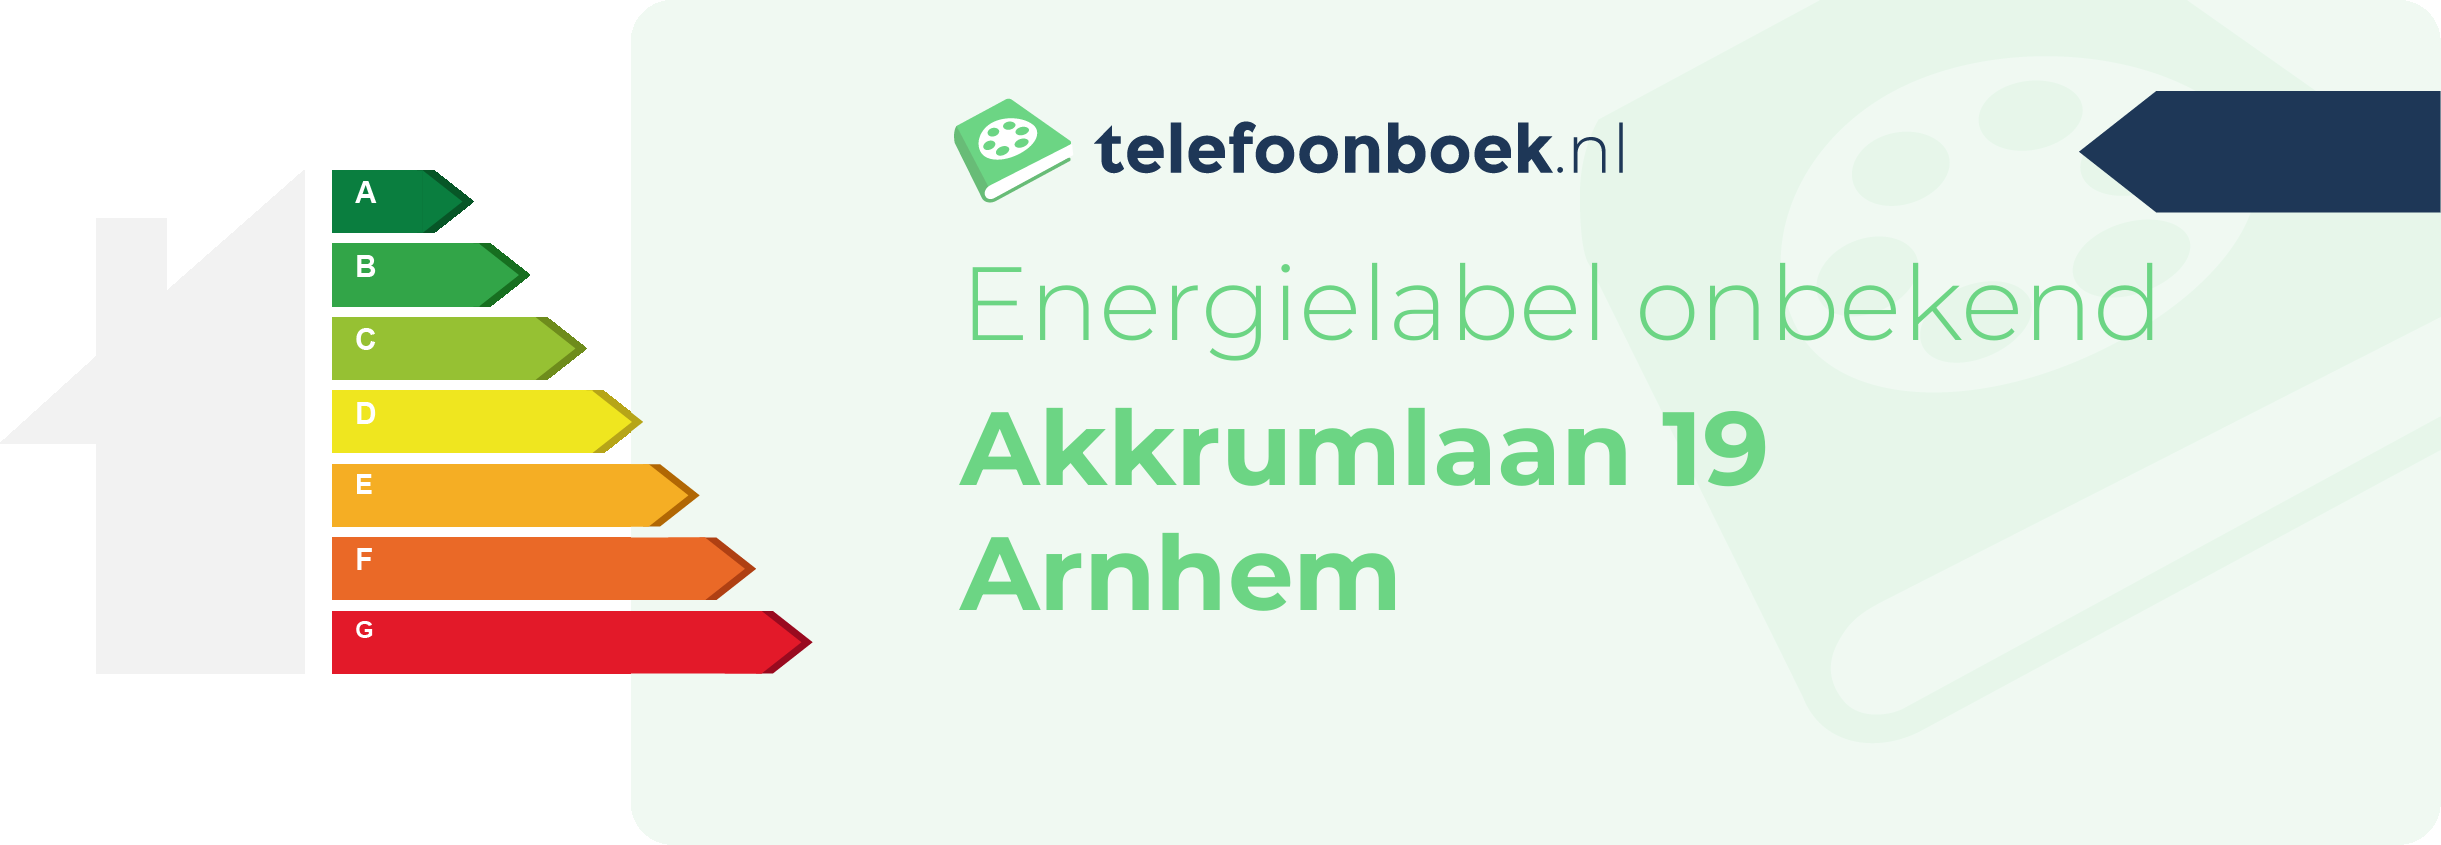 Energielabel Akkrumlaan 19 Arnhem